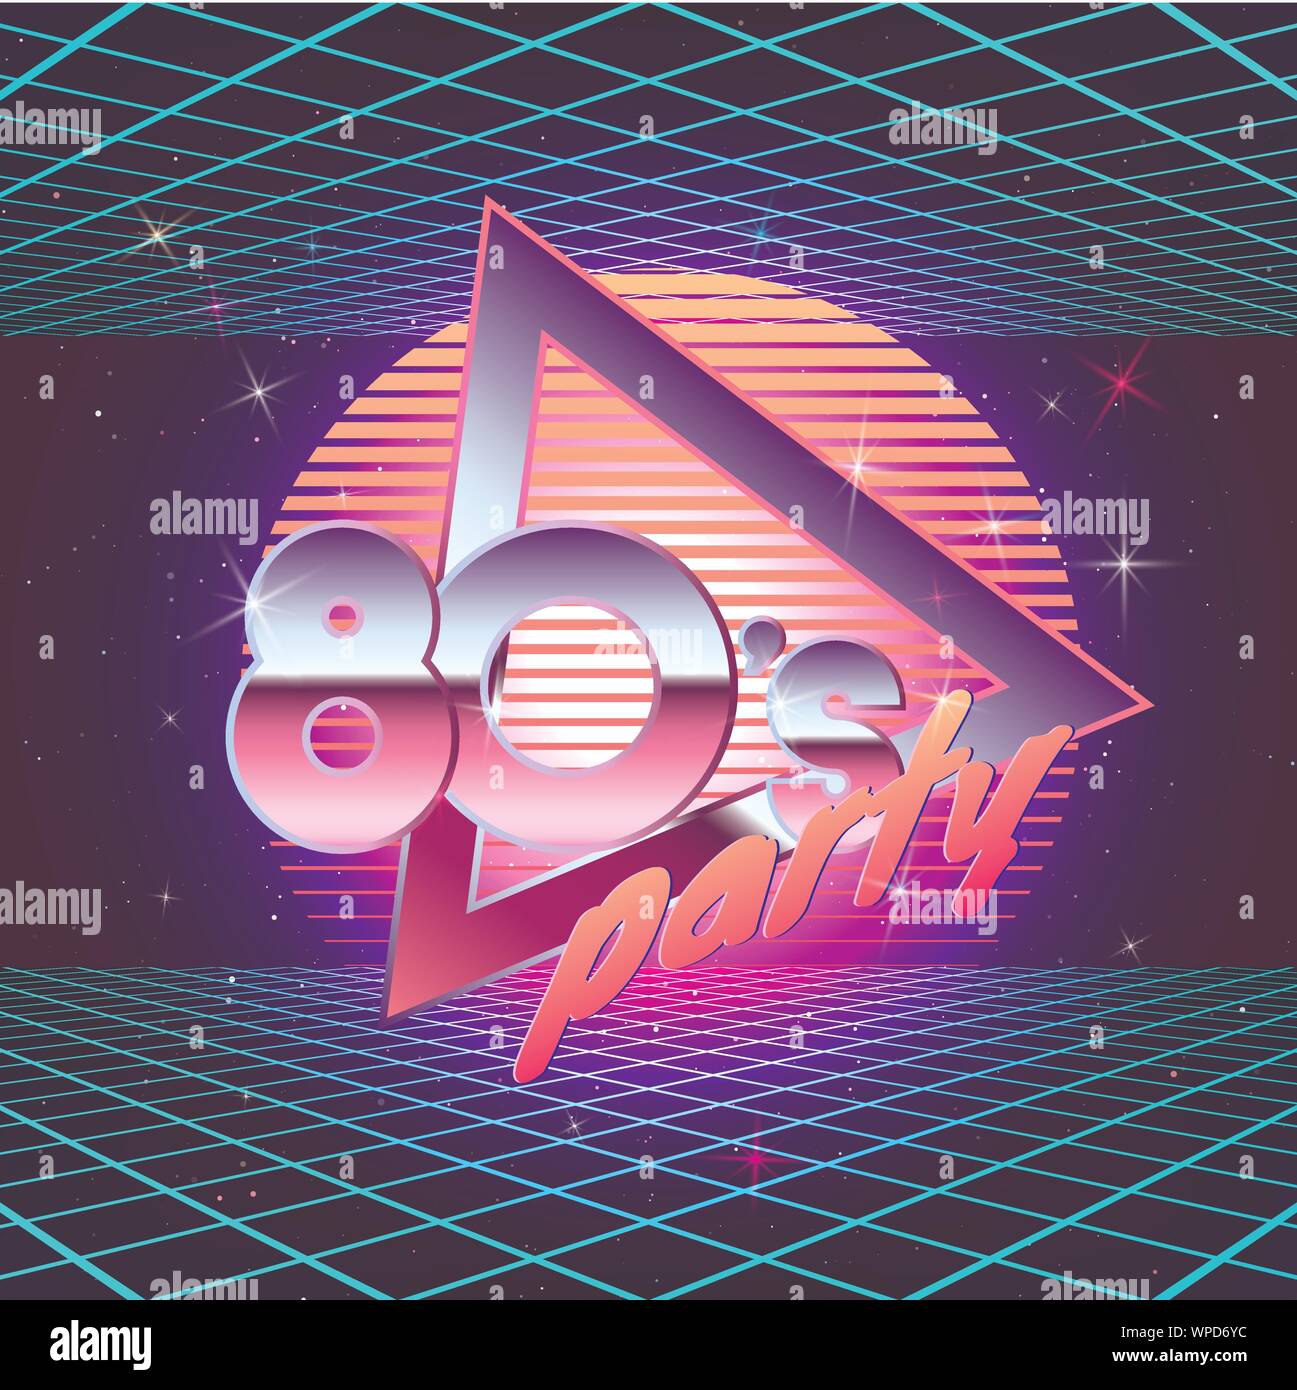 Paster Vorlage für Retro Party 80s mit Laser Strahlen. Neon Farben. Vintage elektronische Musik Flyer. Vector Illustration Stock Vektor